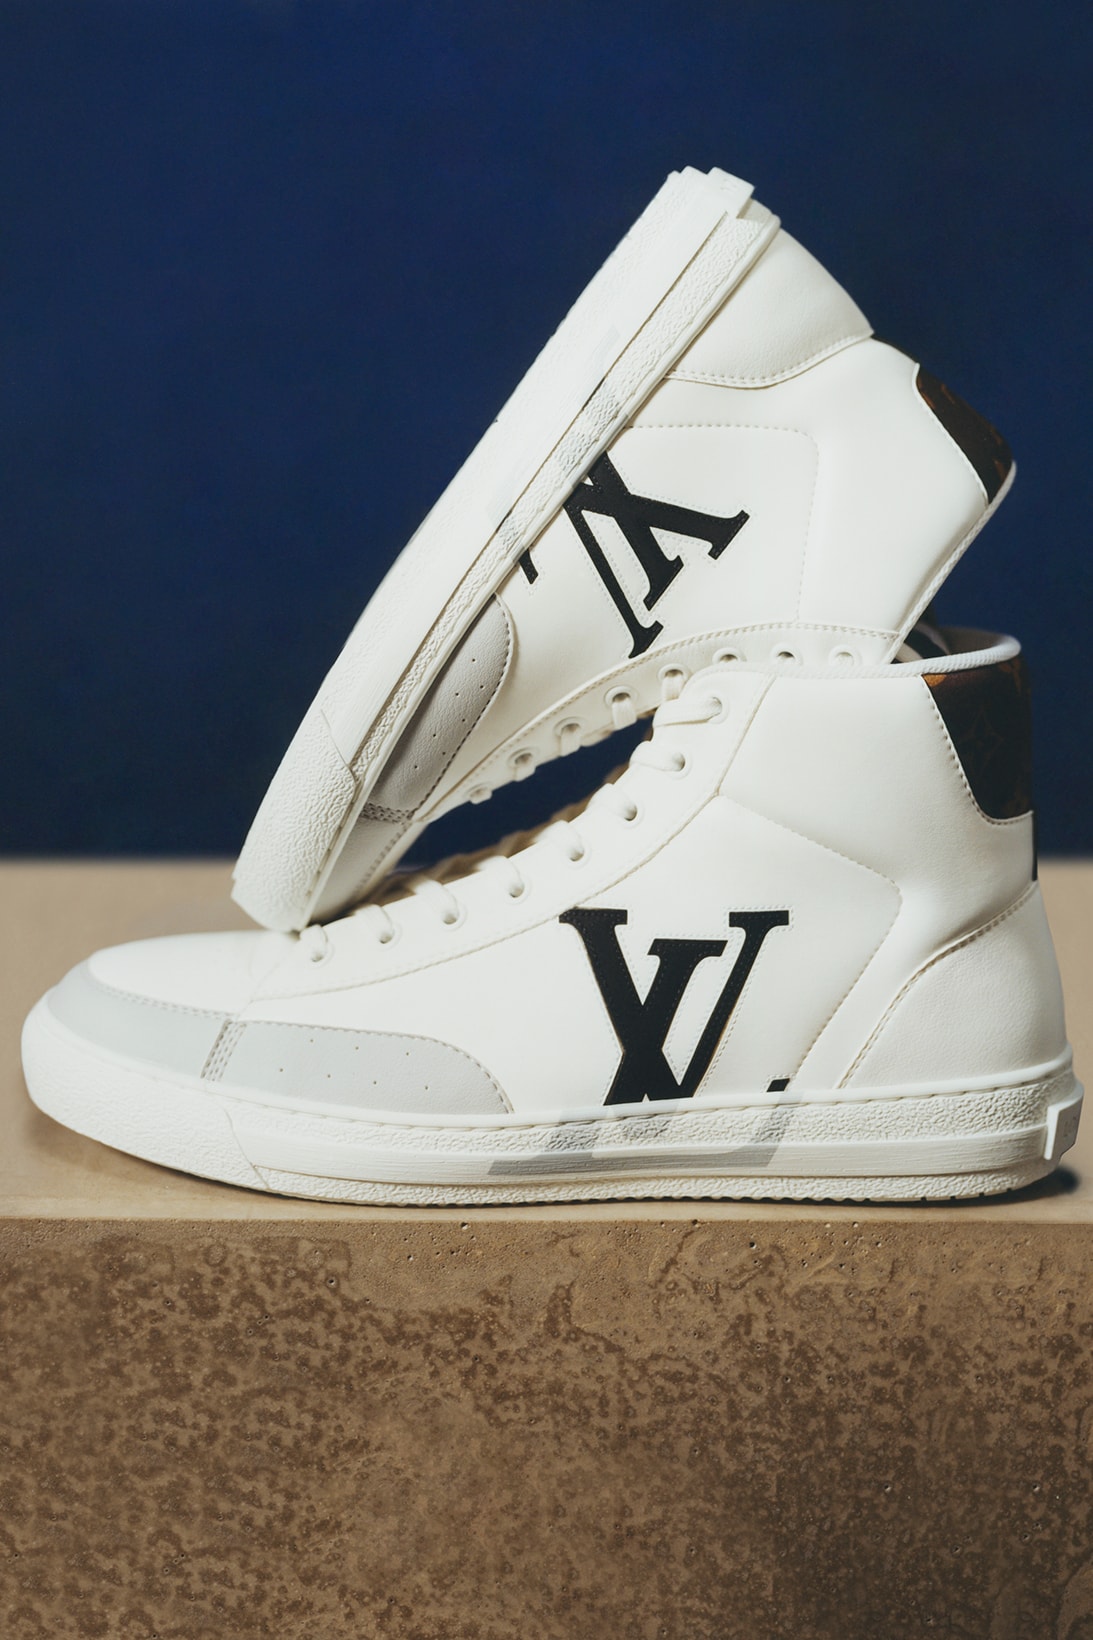 Louis Vuitton Unveils LV Archlight Sneaker Campaign